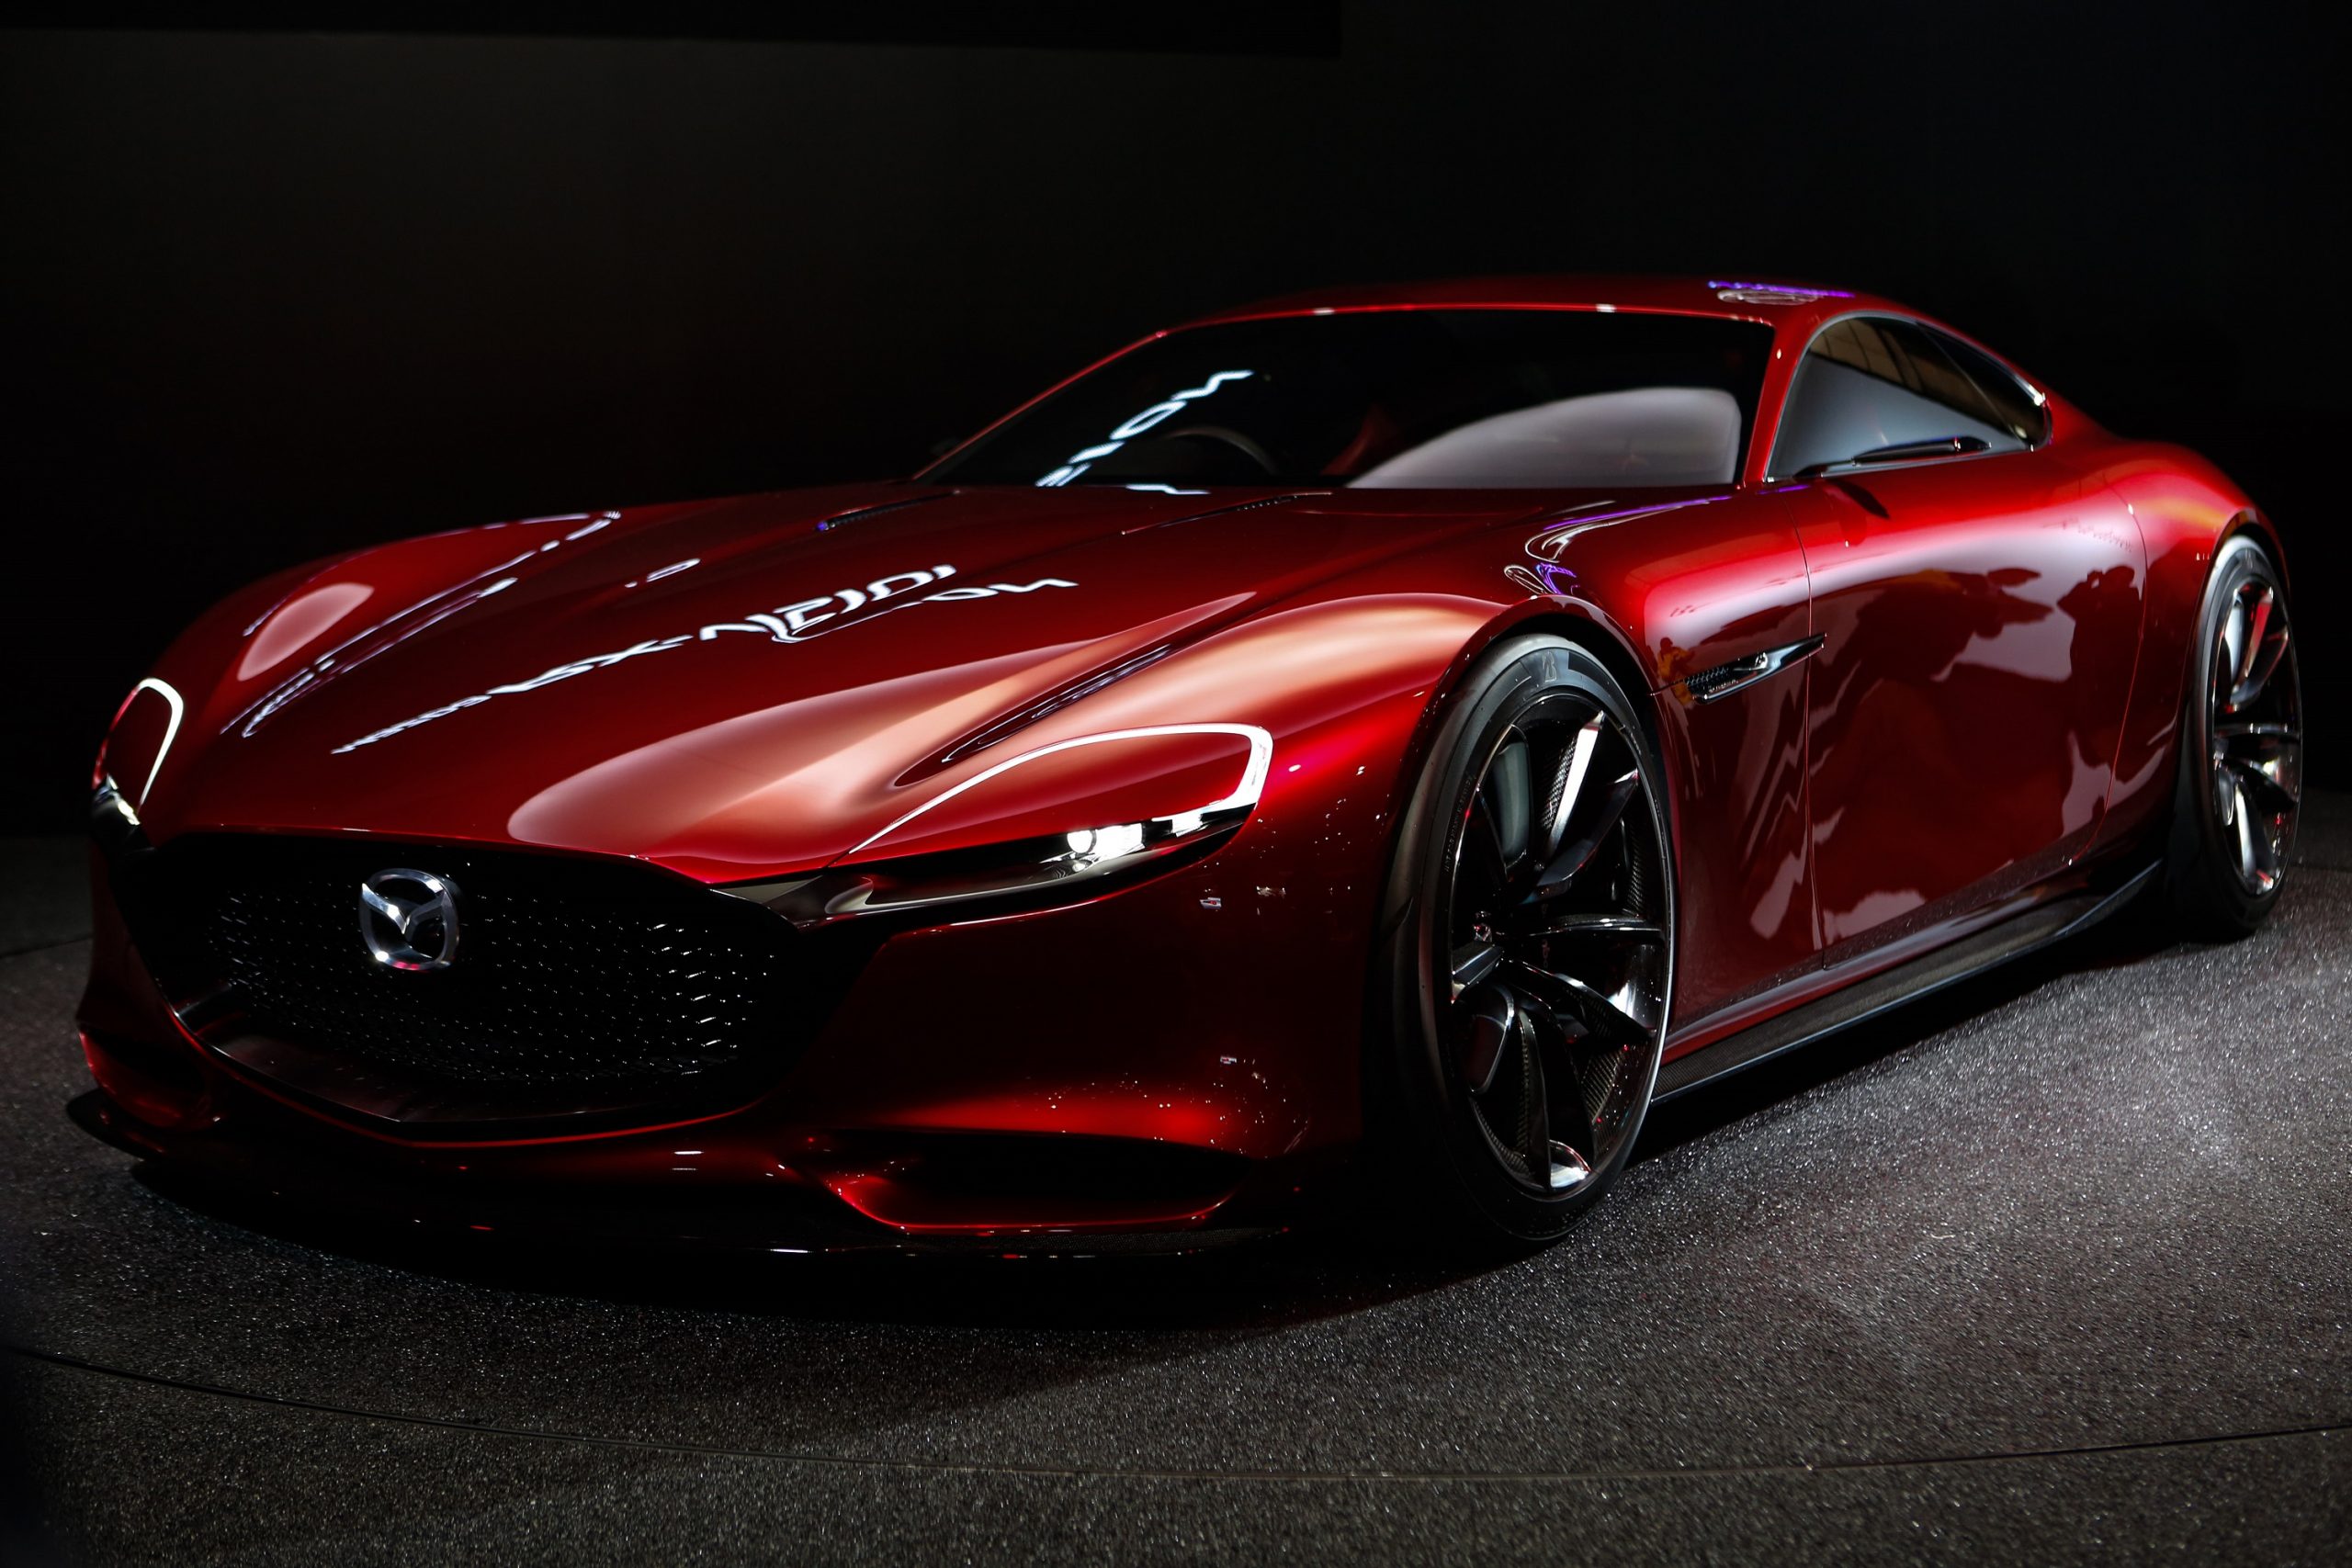 The potential Mazda RX-7 successor: the Mazda RX-Vision concept